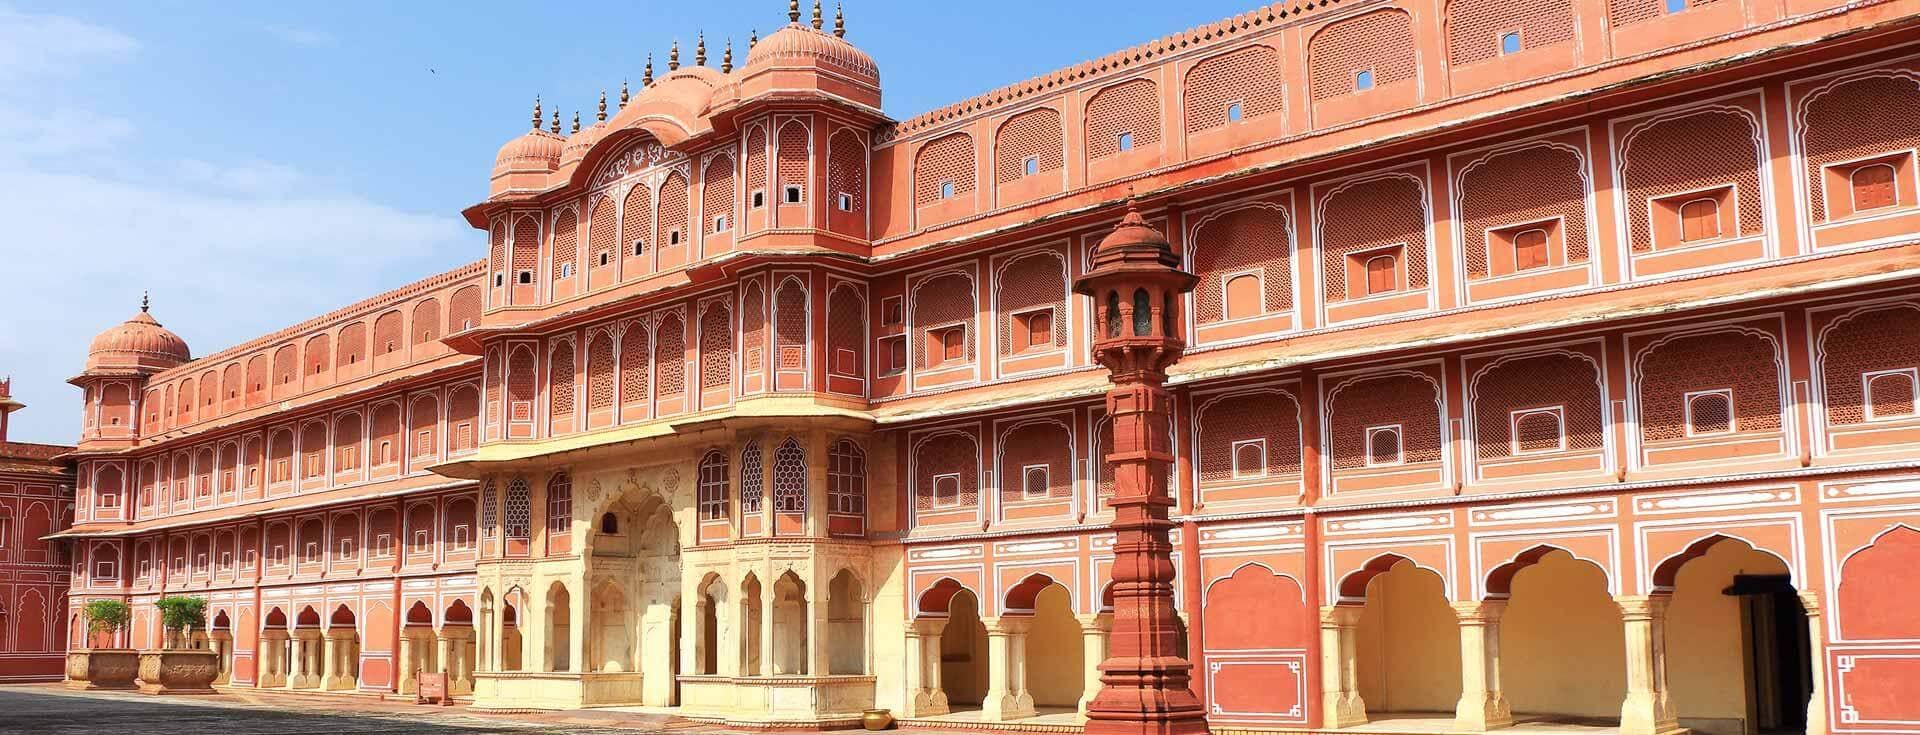 Govind Dev Ji temple, The City Palace, Jaipur